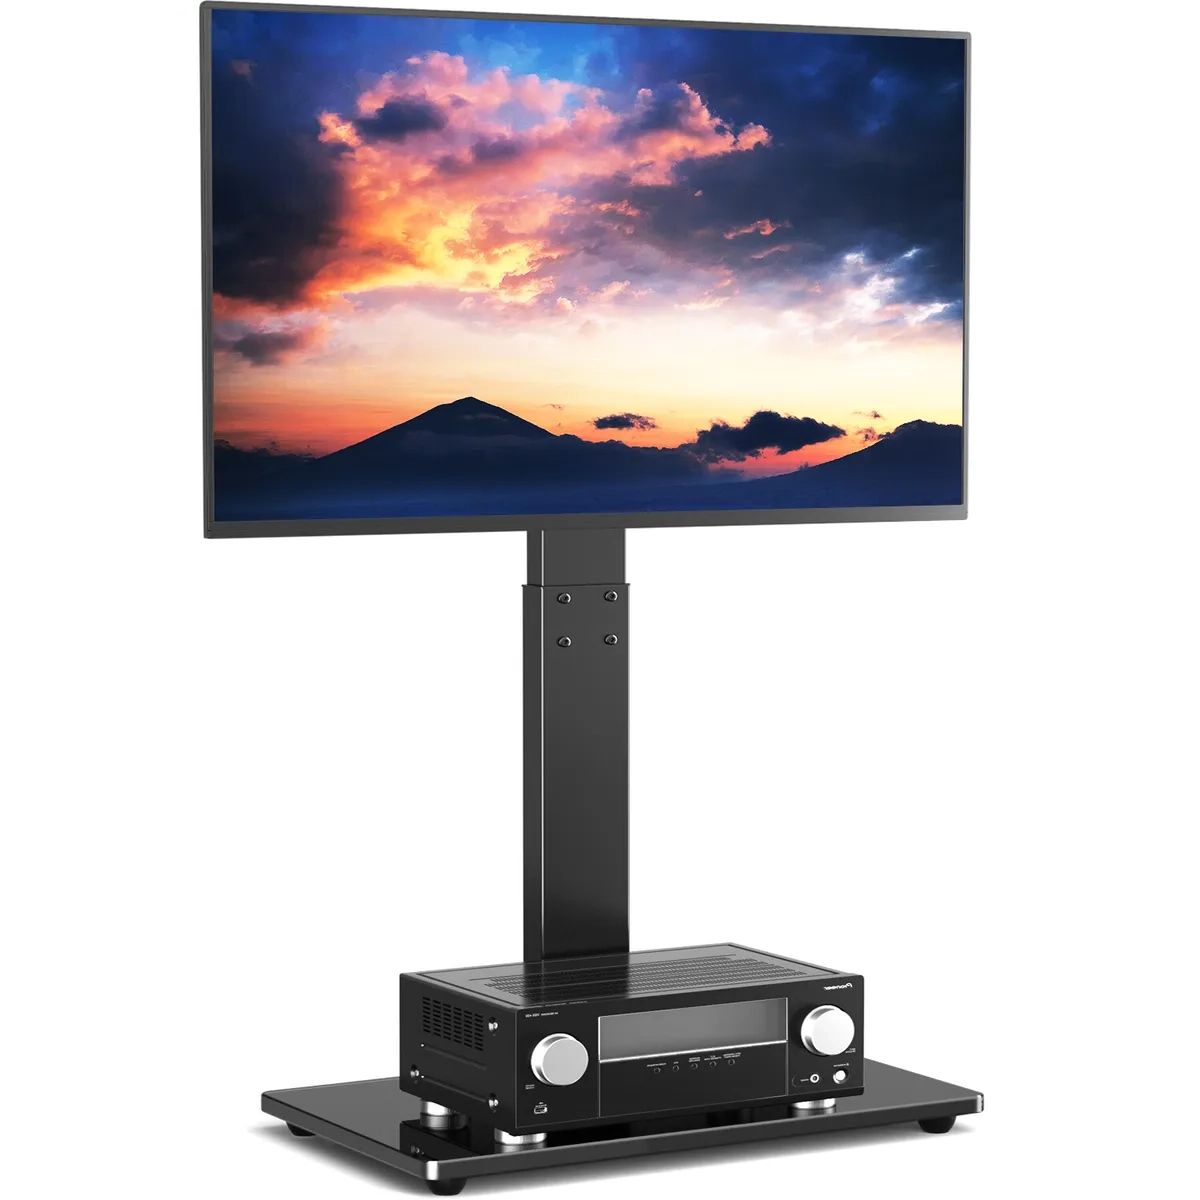 Universal Floor Tv Stand With Swivel Mount For 32 65 Inch Lcd Flat Screen  Tvs | Ebay Regarding Universal Floor Tv Stands (View 3 of 20)